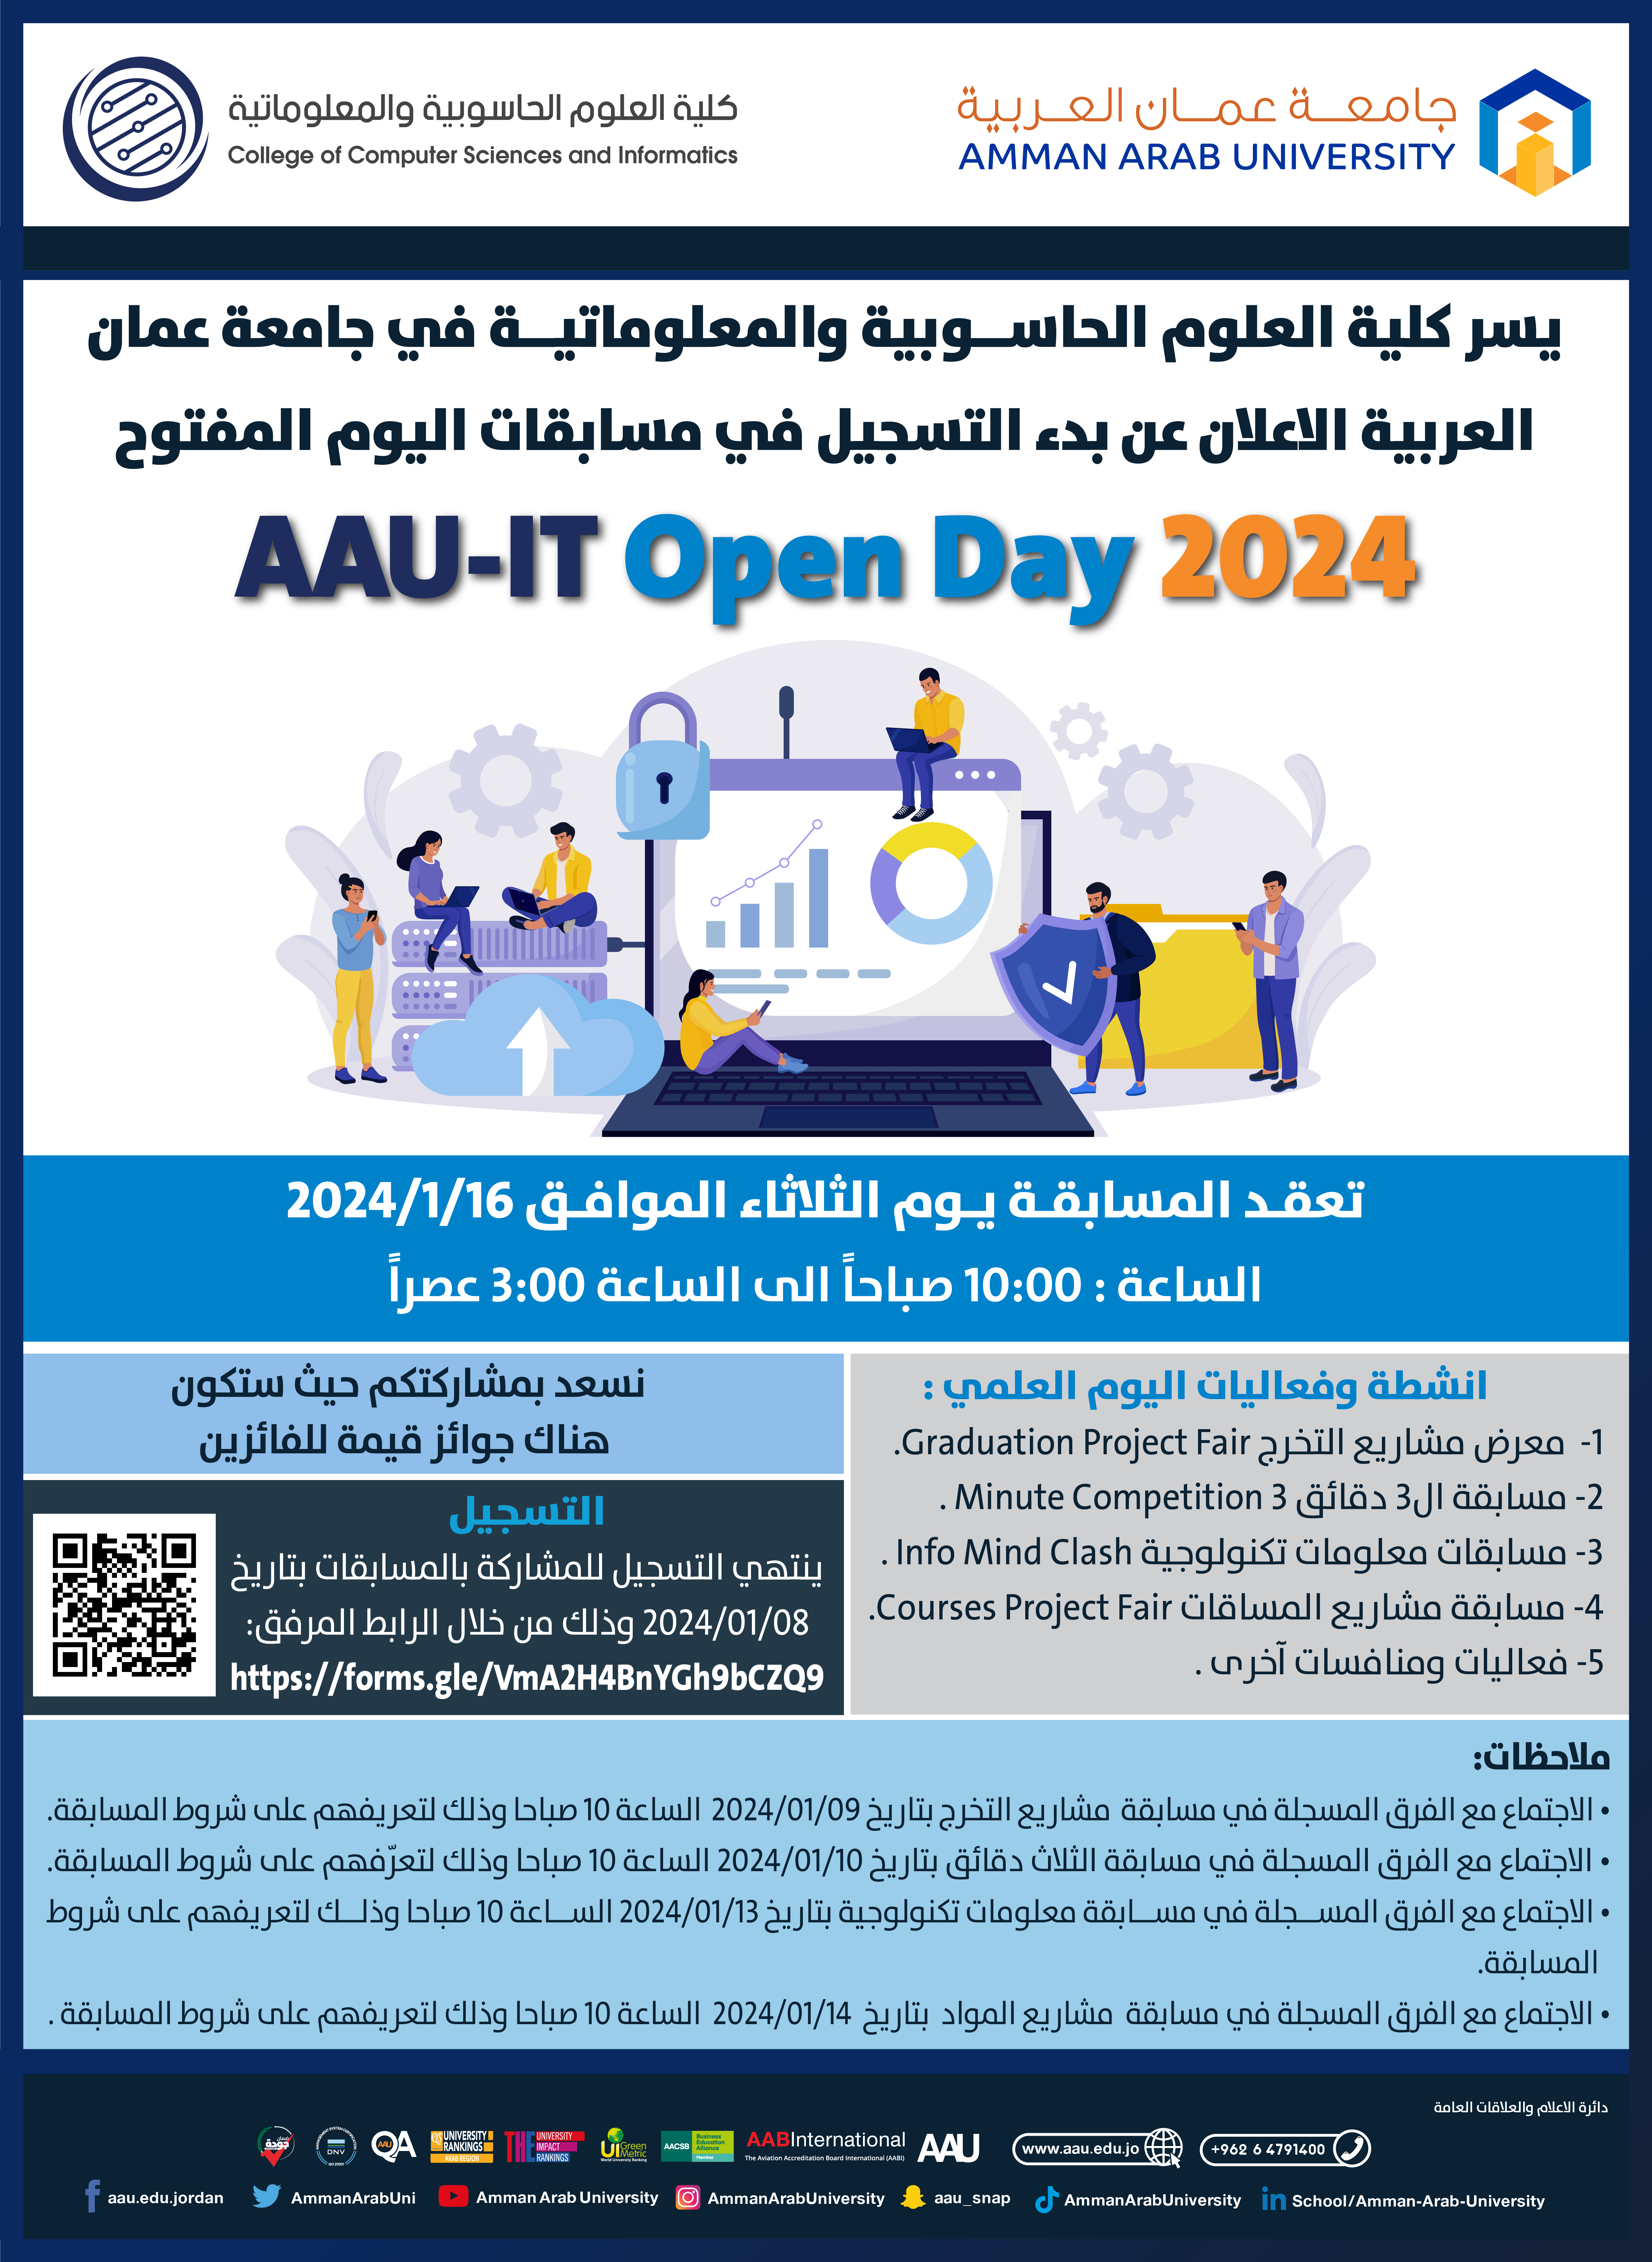 اعلان لطلبة كلية العلوم الحاسوبية والمعلوماتية بخصوص AAU-IT Open Day 2024